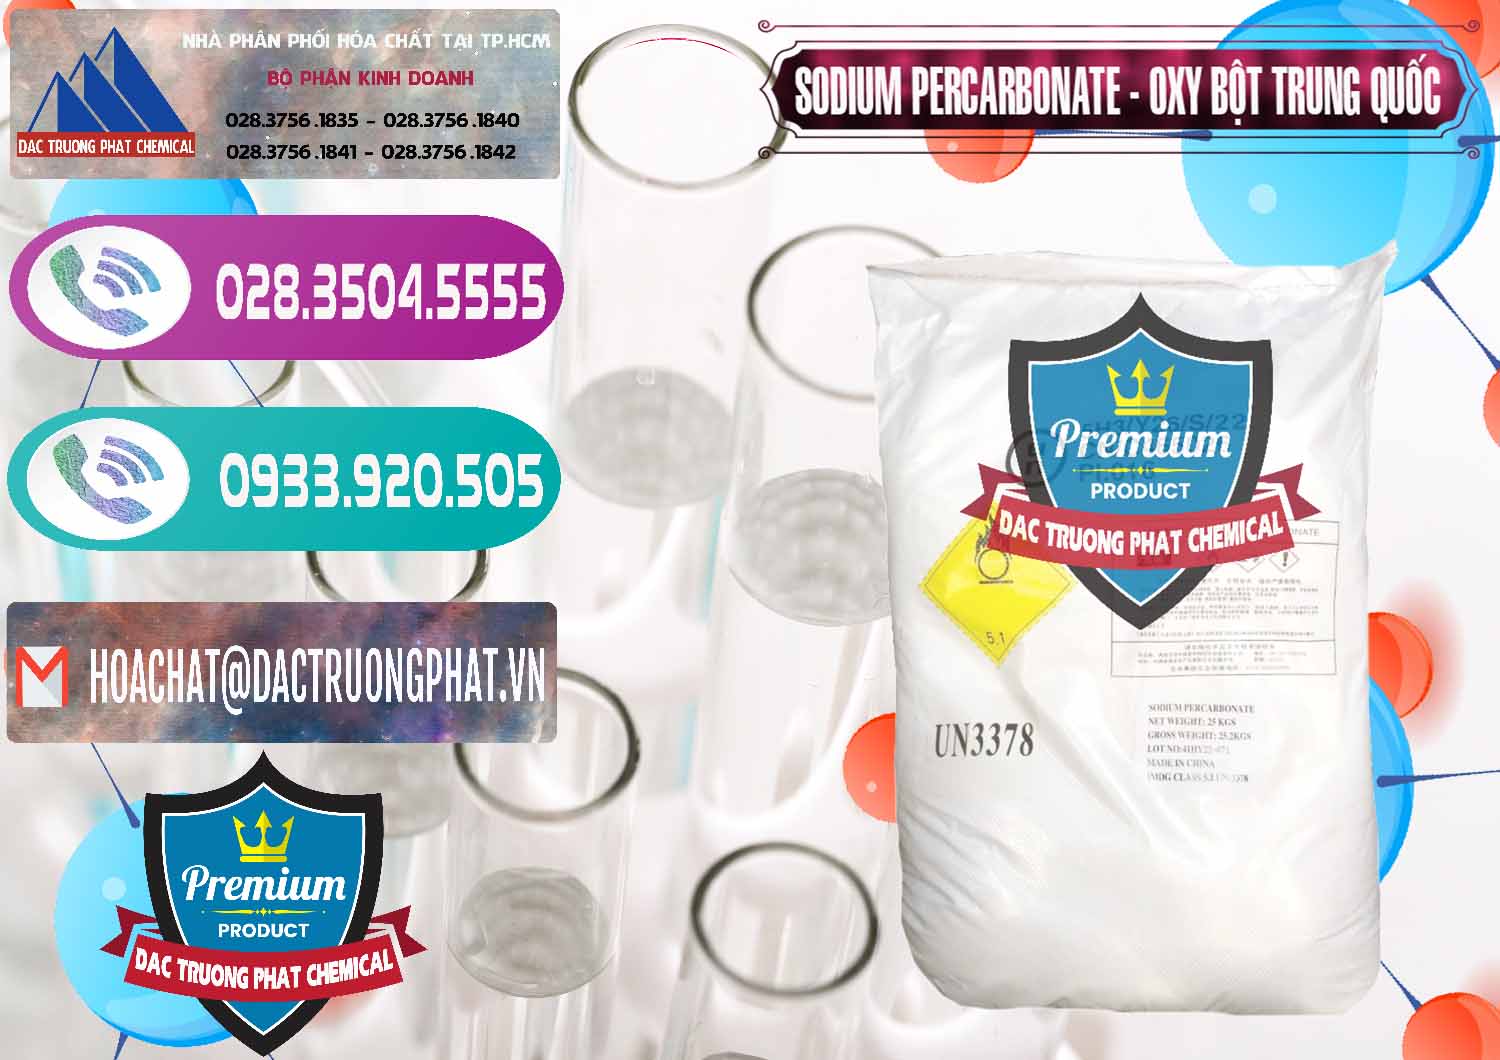 Chuyên cung cấp & bán Sodium Percarbonate Dạng Bột Trung Quốc China - 0390 - Nhà phân phối & nhập khẩu hóa chất tại TP.HCM - hoachatxulynuoc.com